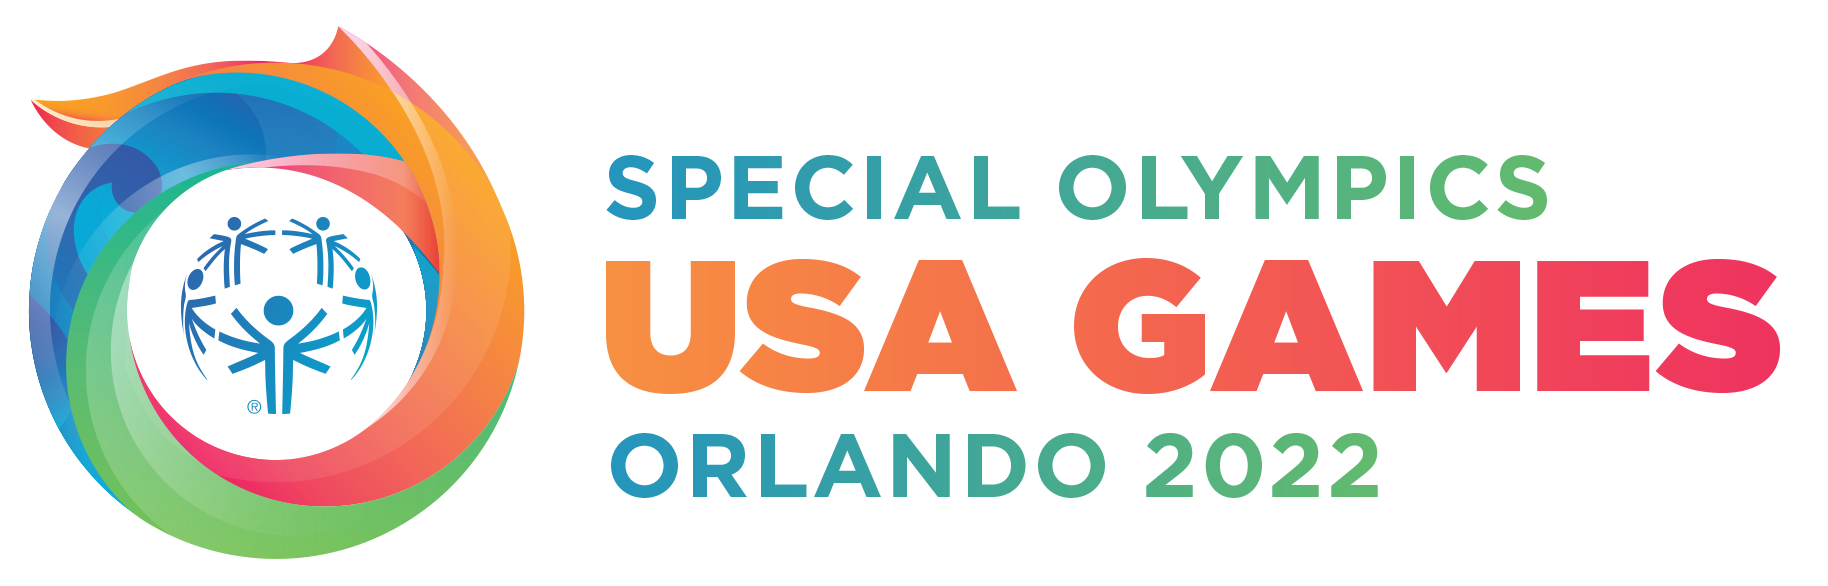 Special Olympics USA 2022 logo